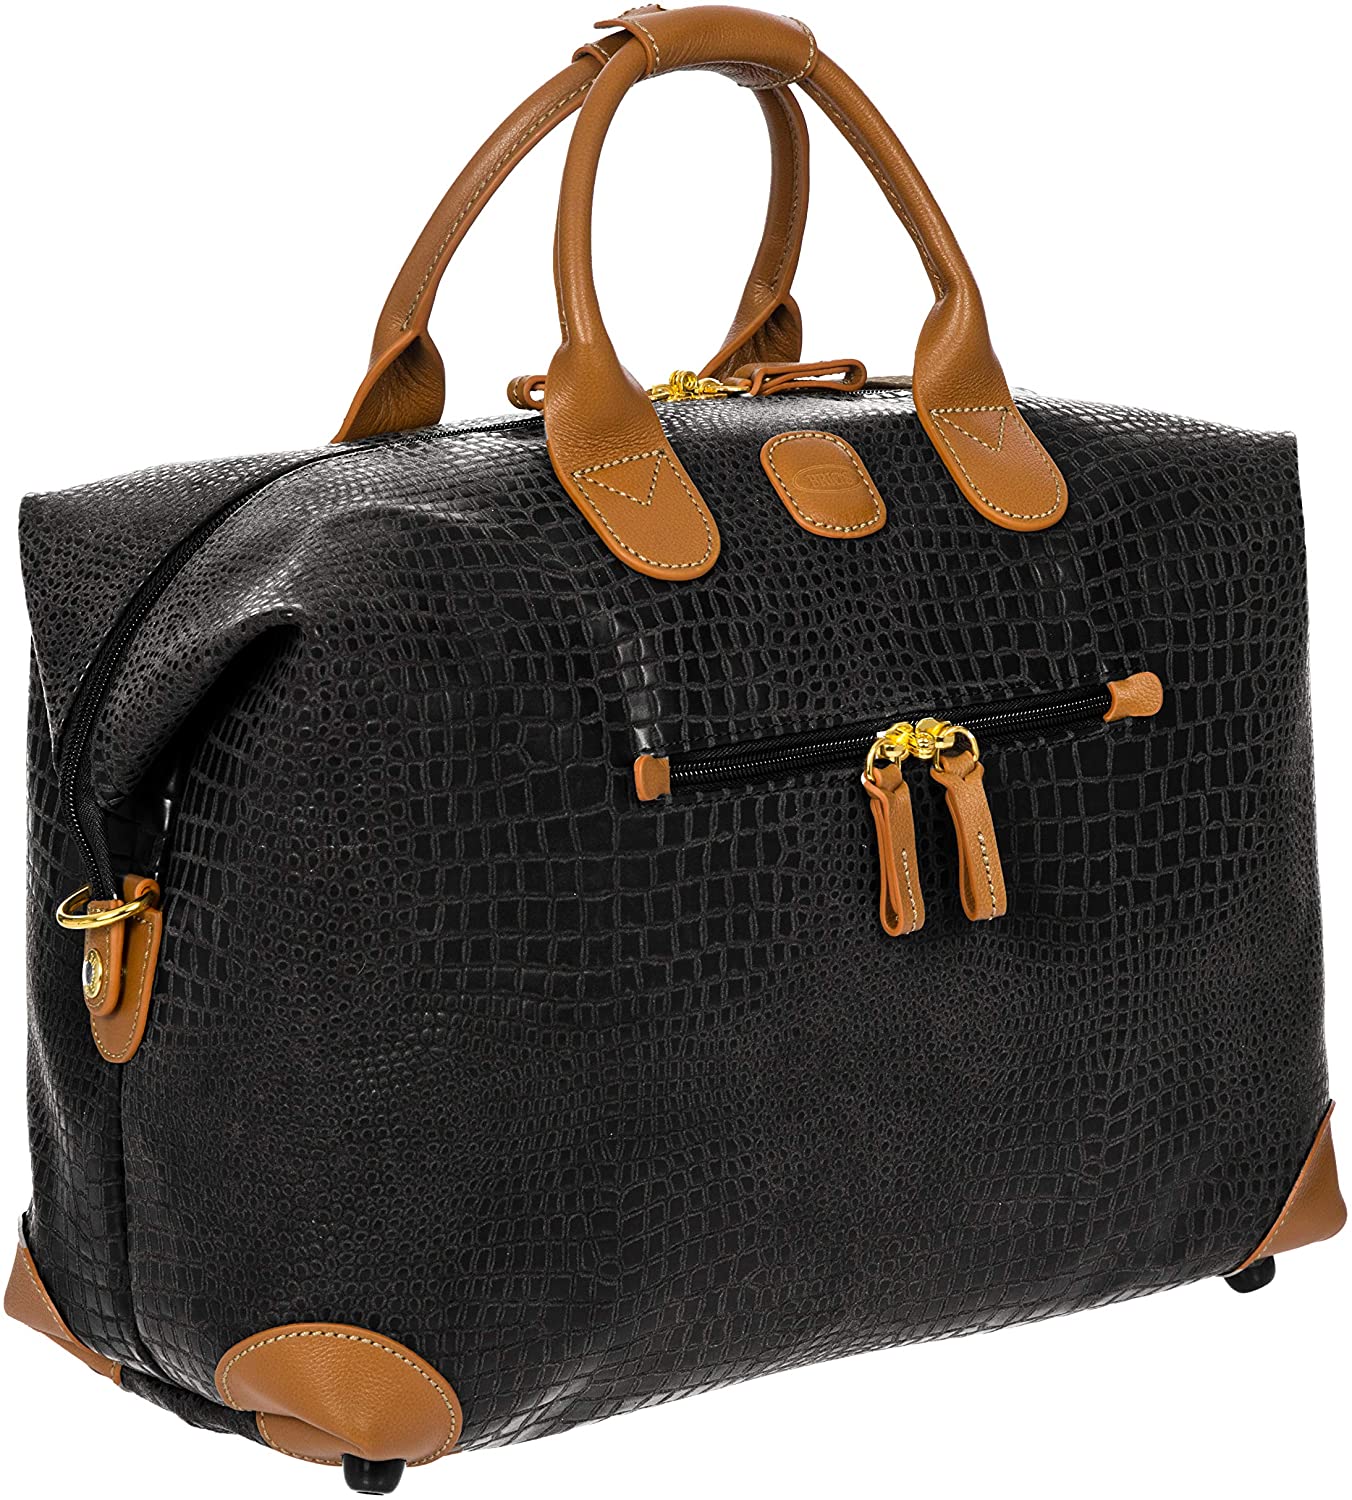 Nylon Fabric Safari Luggage Bags, Size: 22 inch